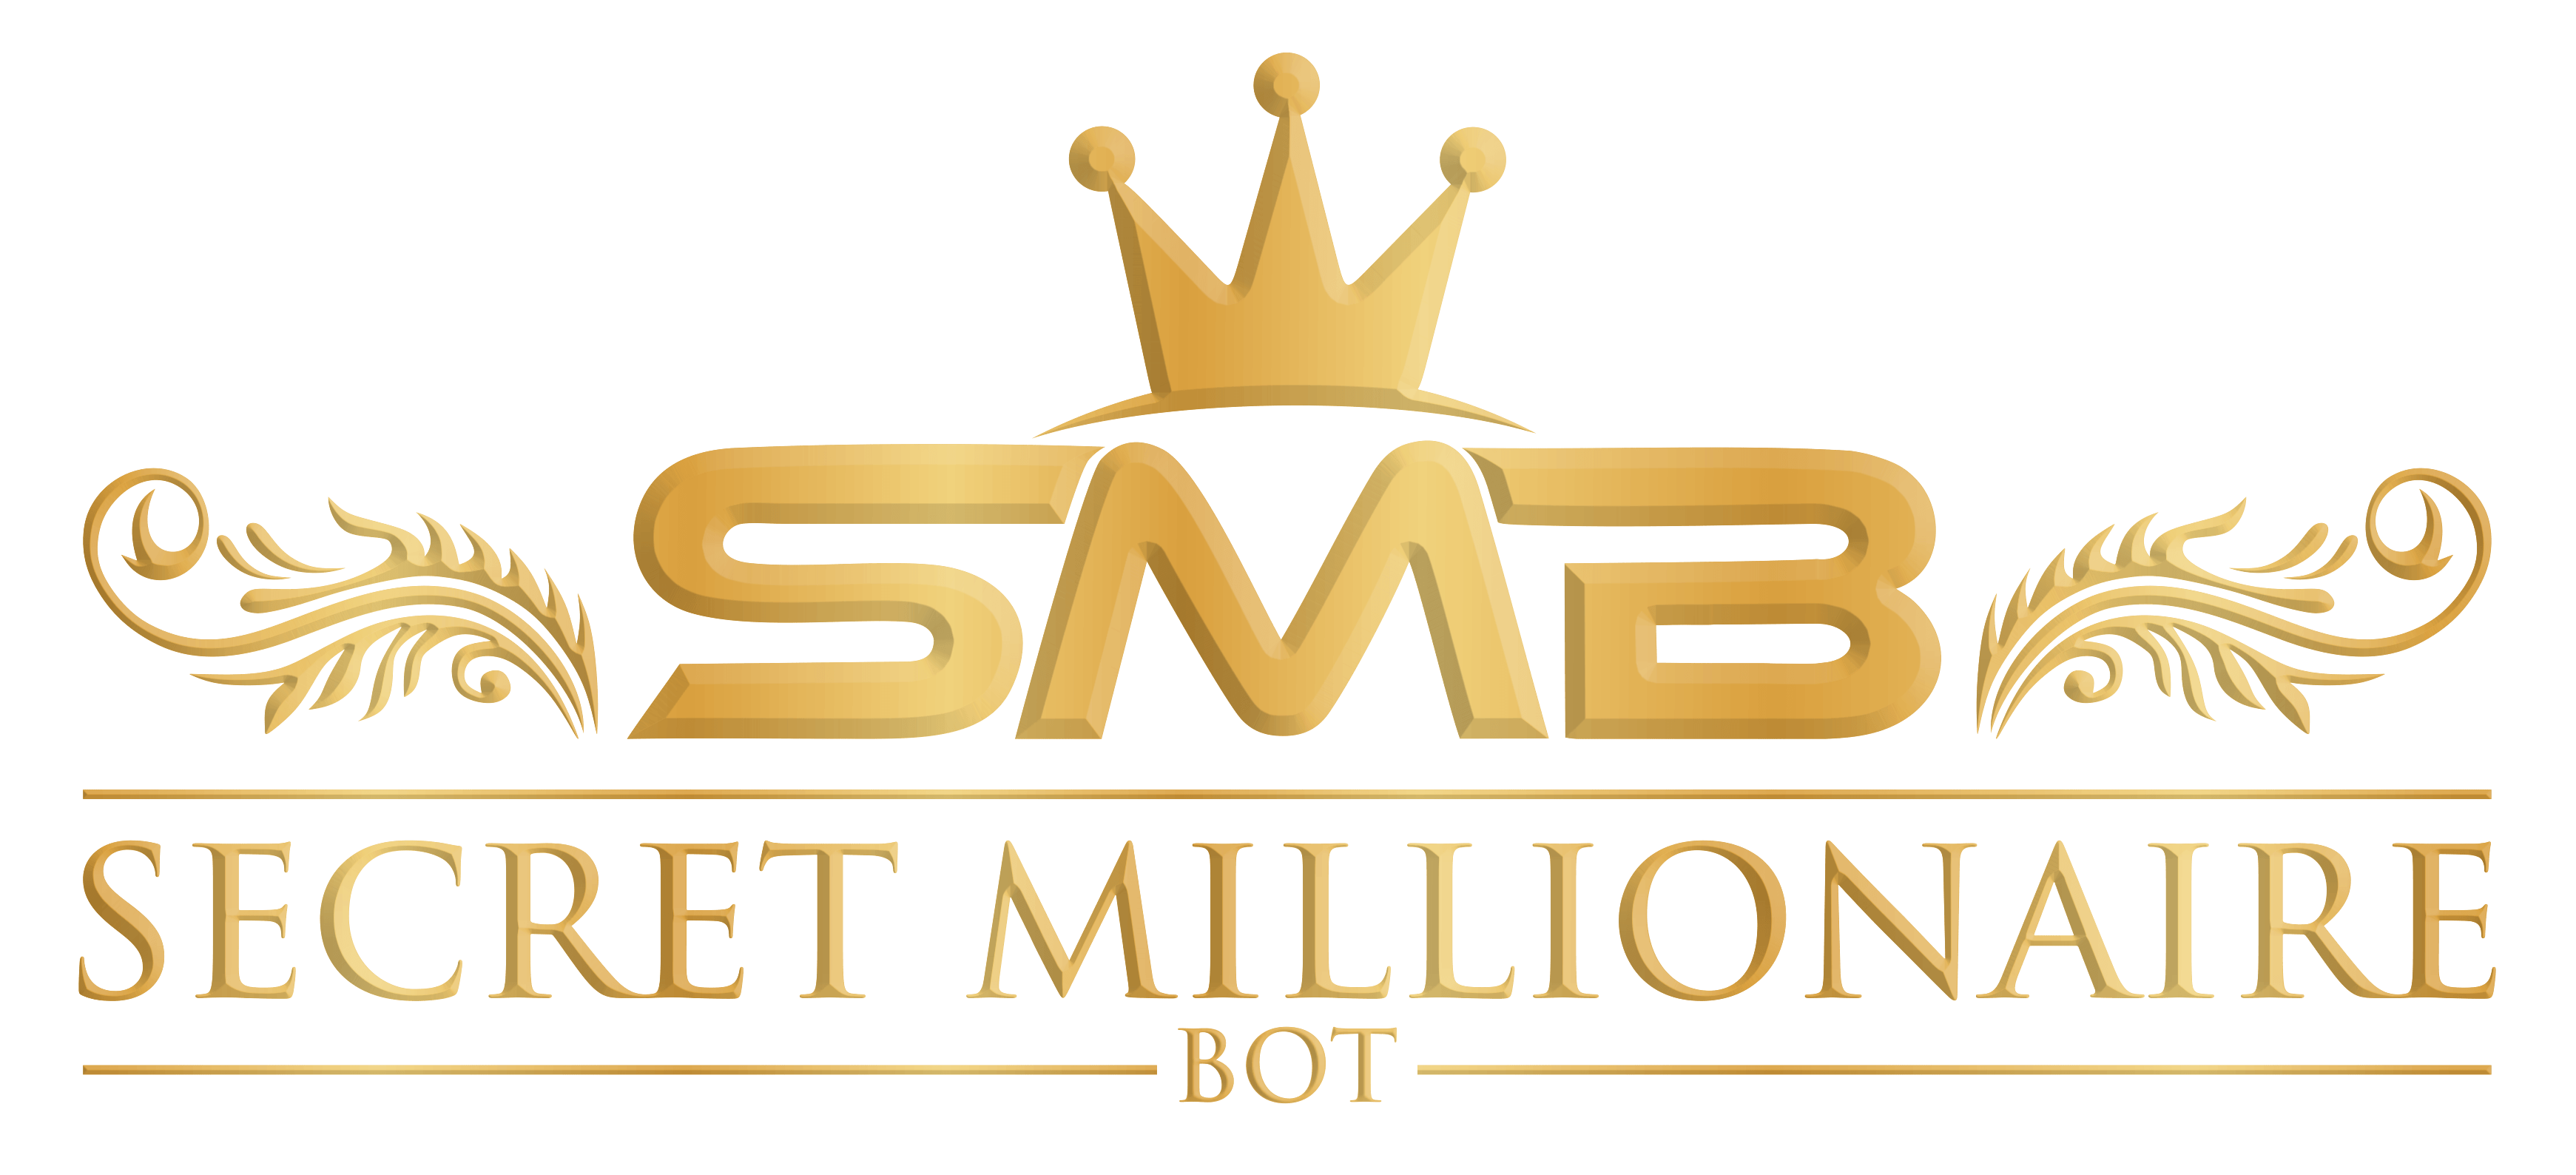 Secret Millionaire Bot Logo